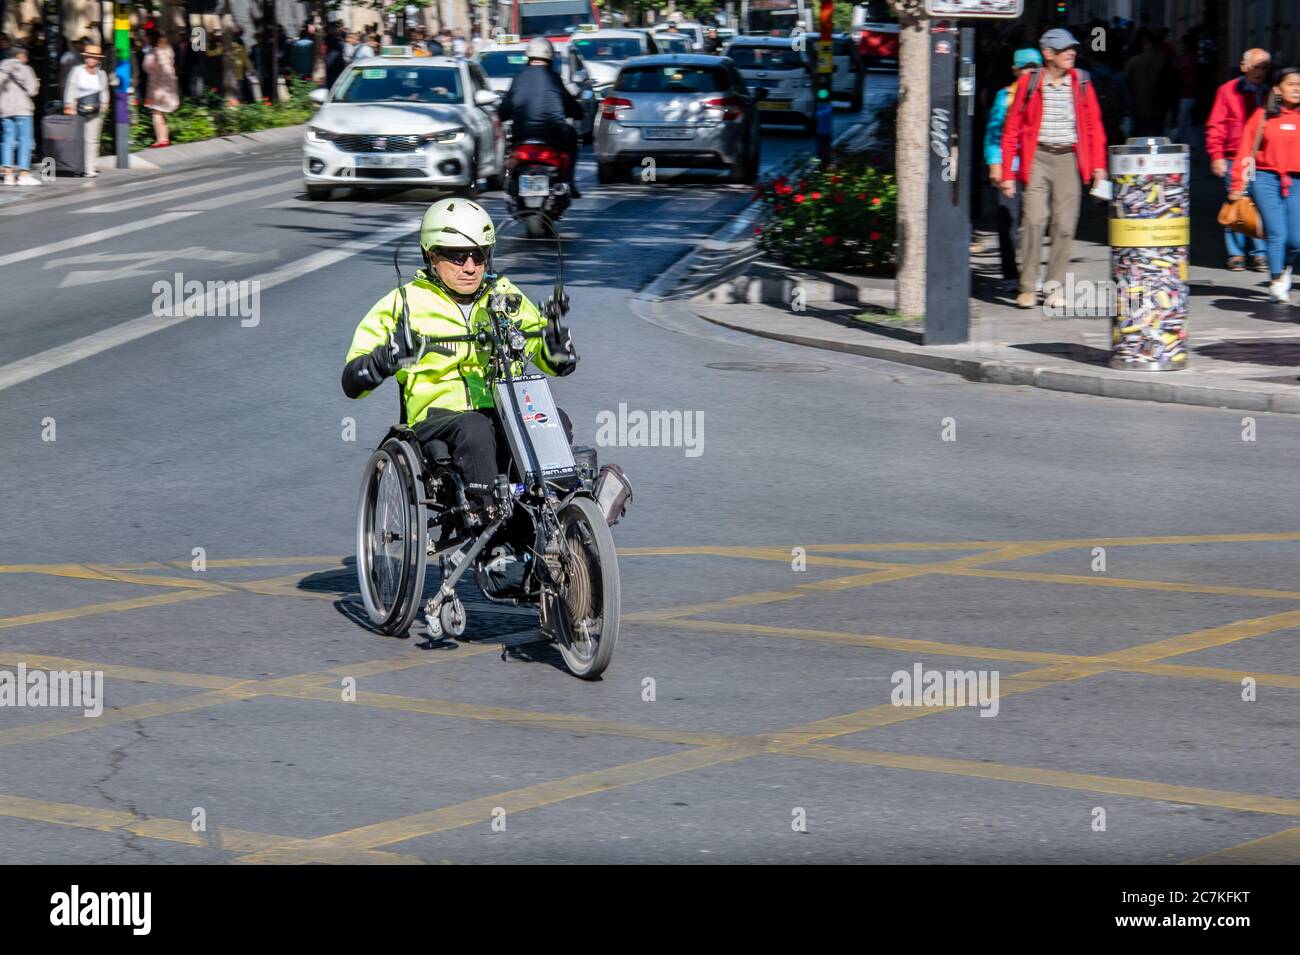 Un homme navigue sur une route de Grenade sur son vélo électrique Rodem Stricker Handbike. Banque D'Images